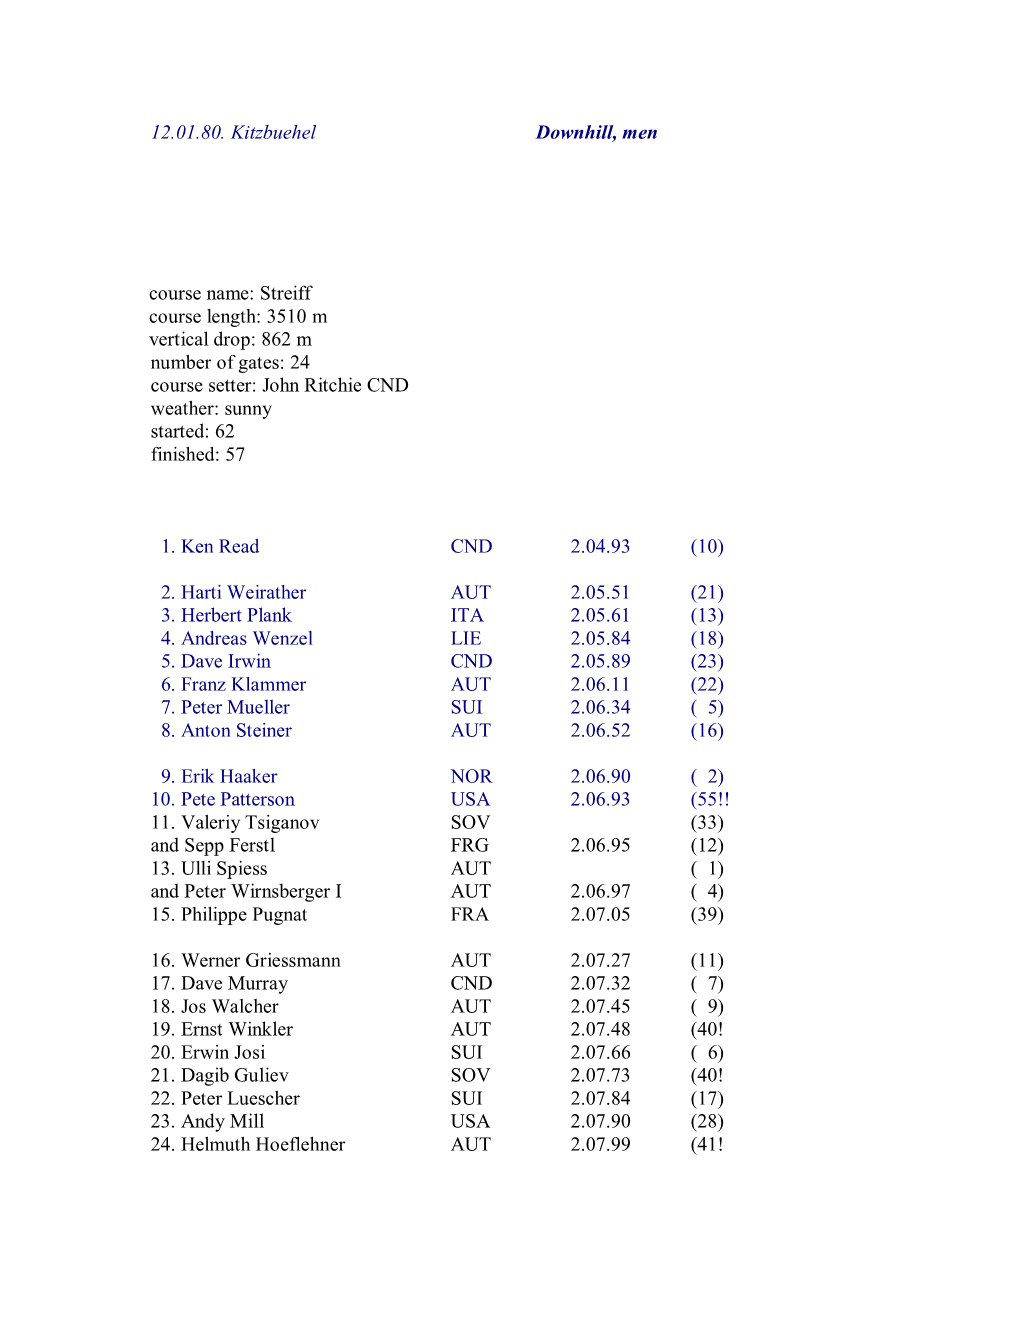 12.01.80. Kitzbuehel Downhill, Men Course Name: Streiff Course Length